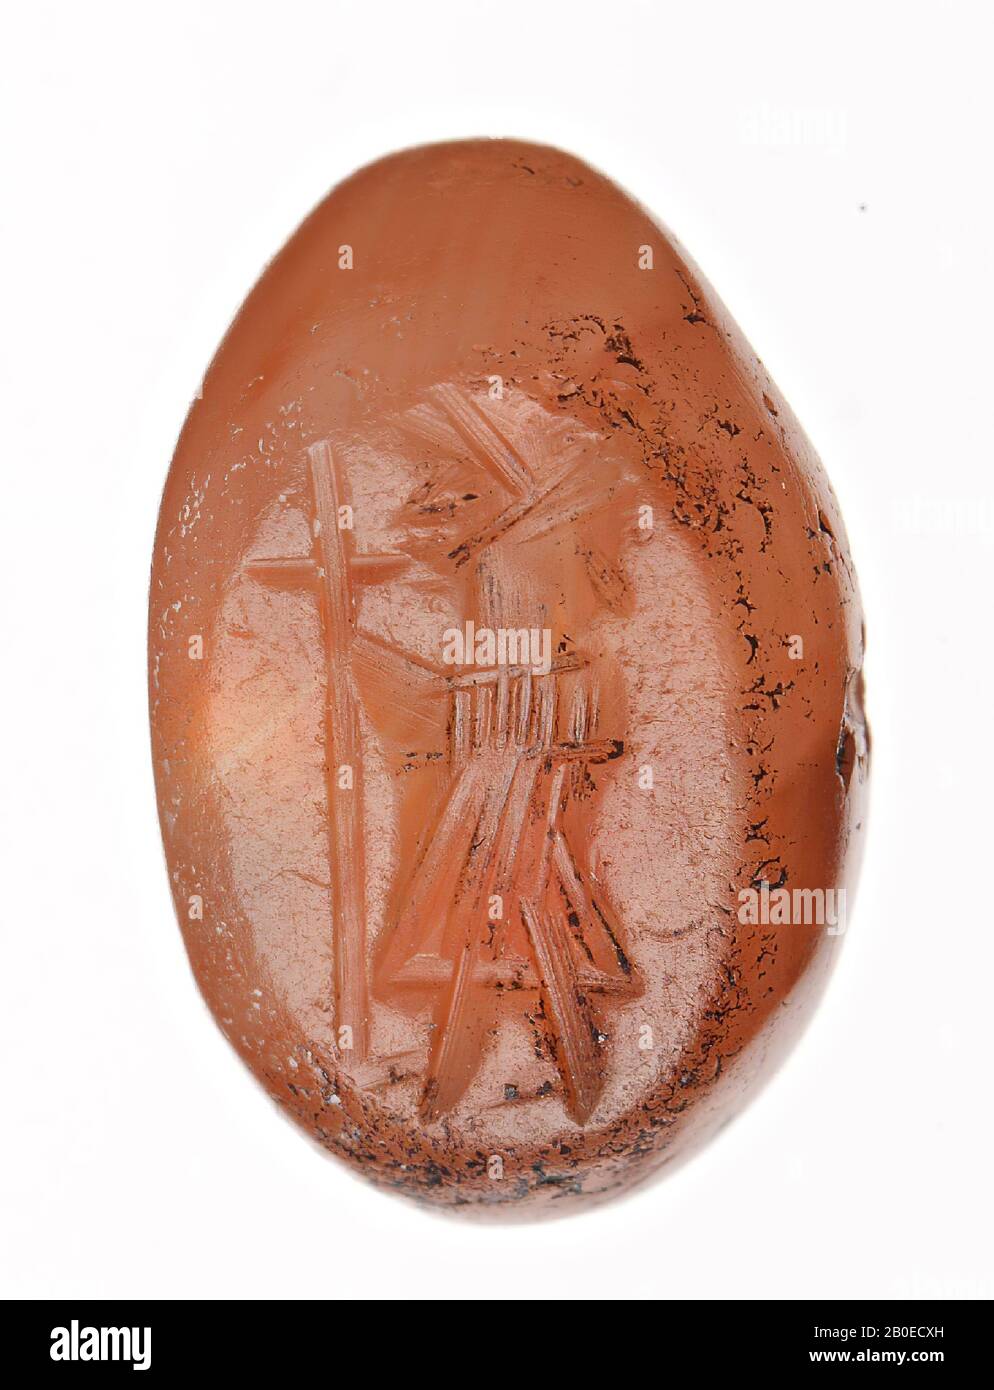 Un francobollo a forma di ellisse con immagine di una persona maschile in piedi che tende in avanti un bastone a forma di croce, sigillo, pietra, carnelio, L 0,8 cm, D 1,2 cm, Iran Foto Stock